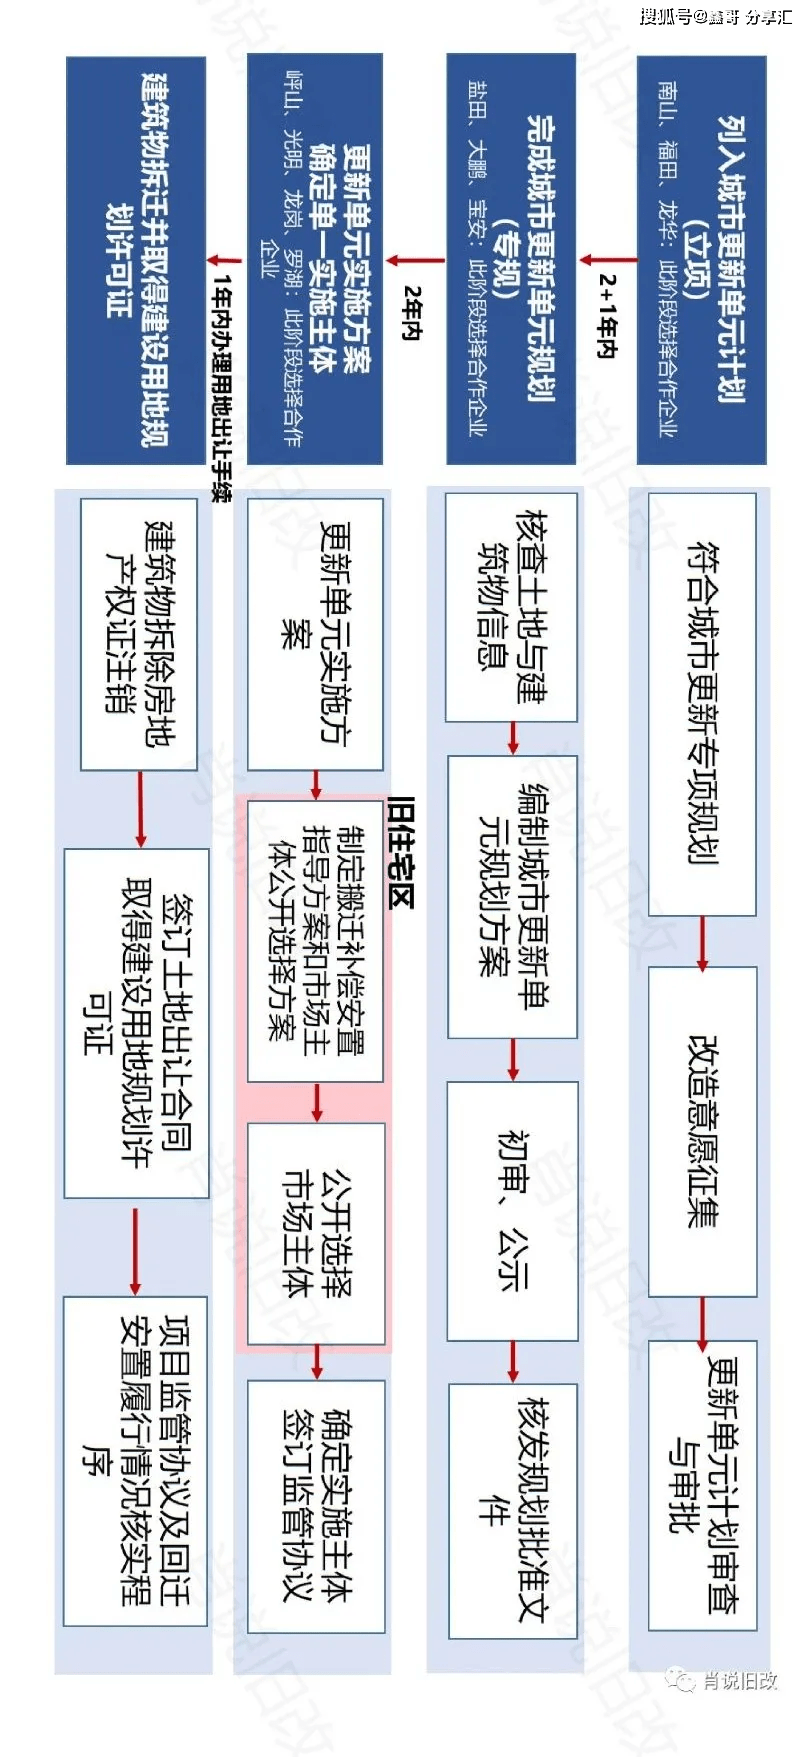 城市更新流程一张图(深圳,广州,佛山,东莞市)